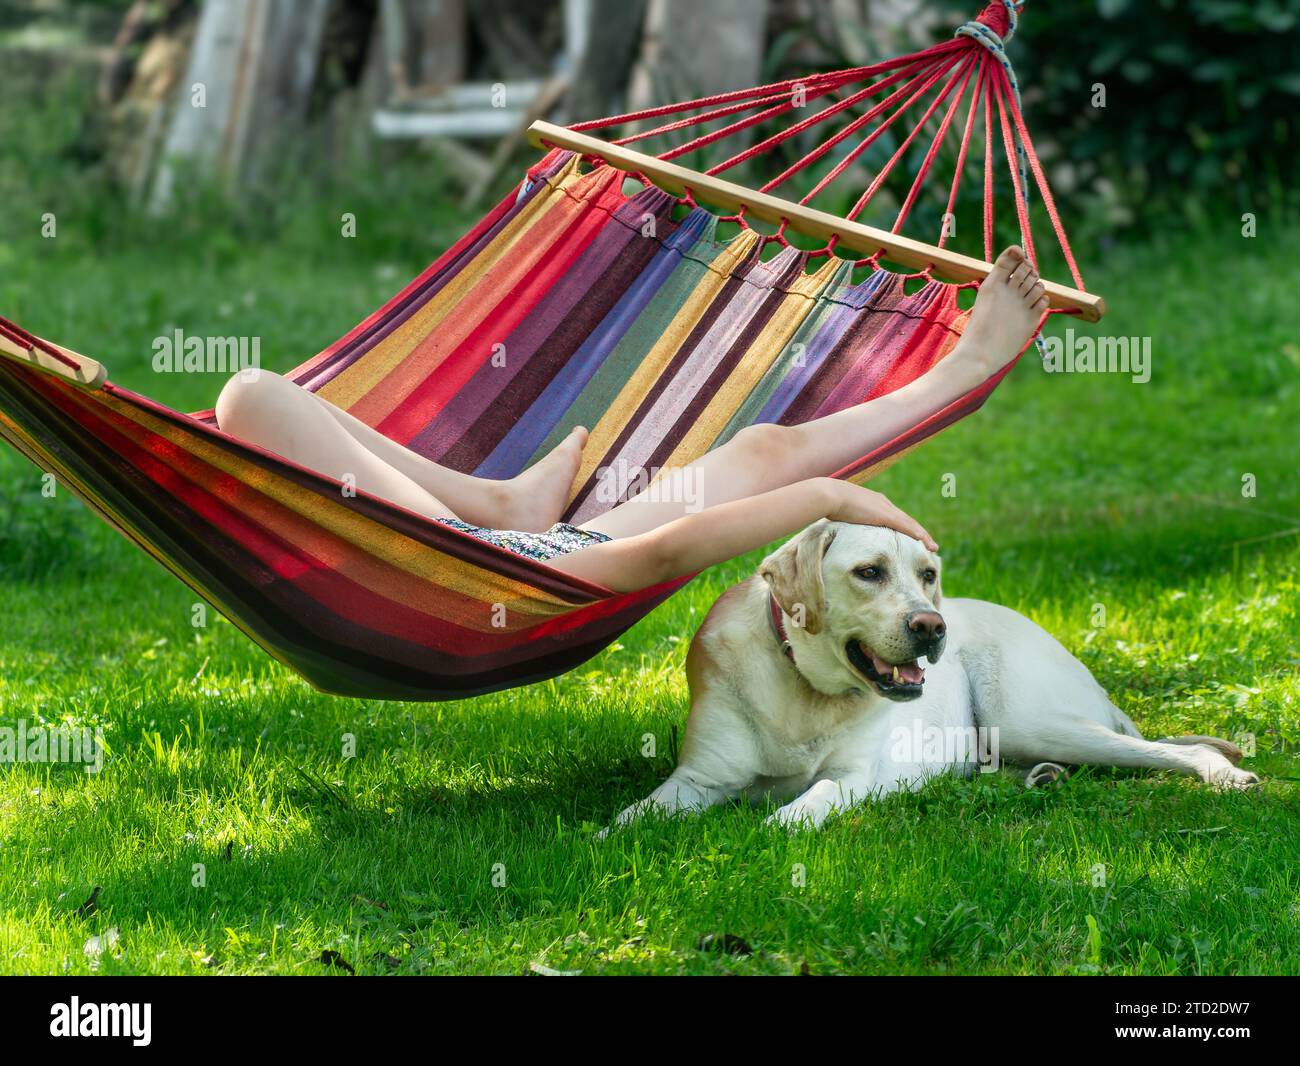 Rilassati su un'amaca in estate, con un cane Labrador al tuo fianco Foto Stock